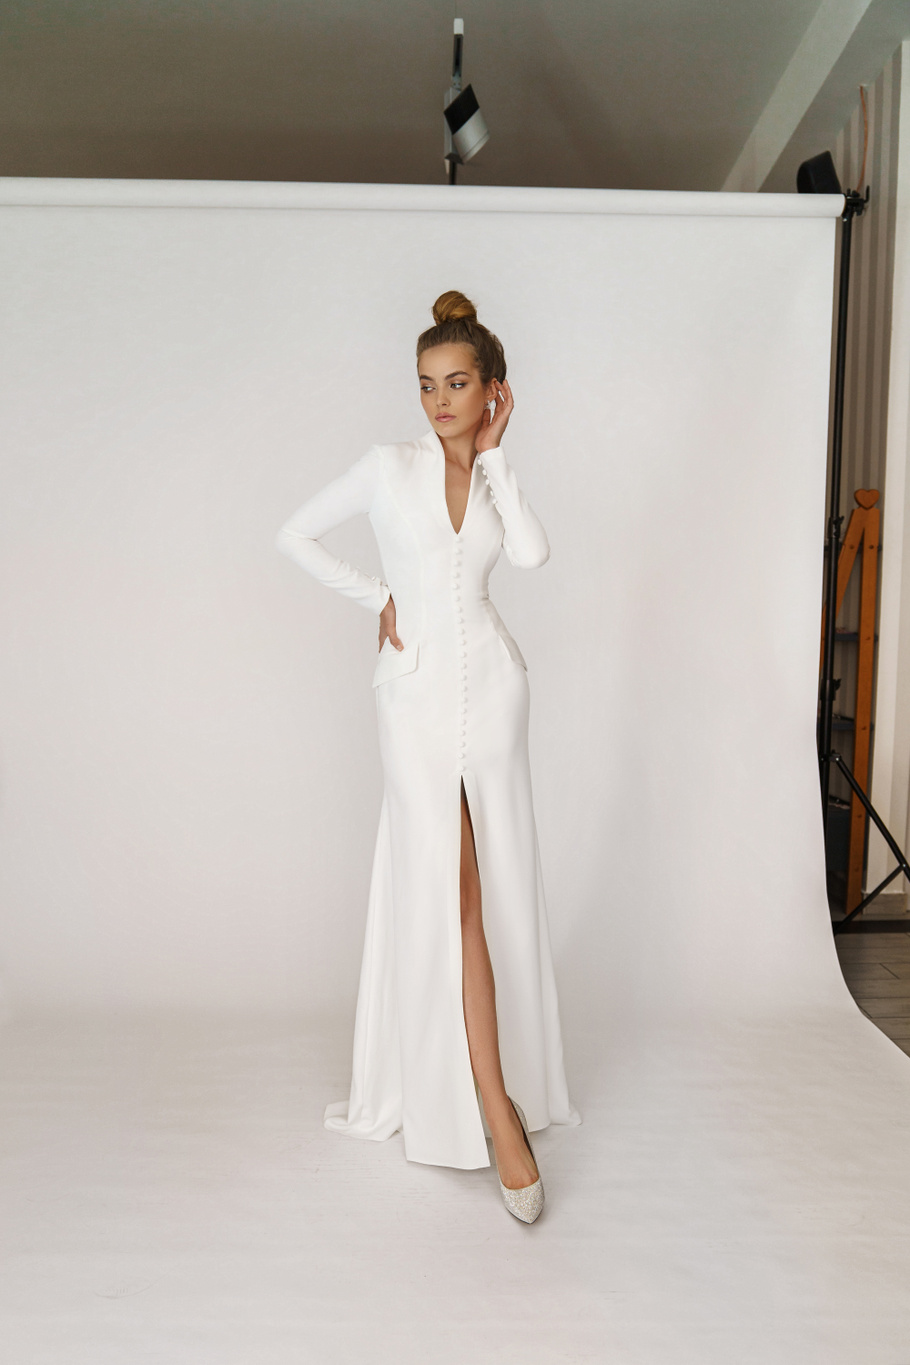 Свадебное платье «Олсен» Марта — купить в Санкт-Петербурге платье Олсен из коллекции 2021 года